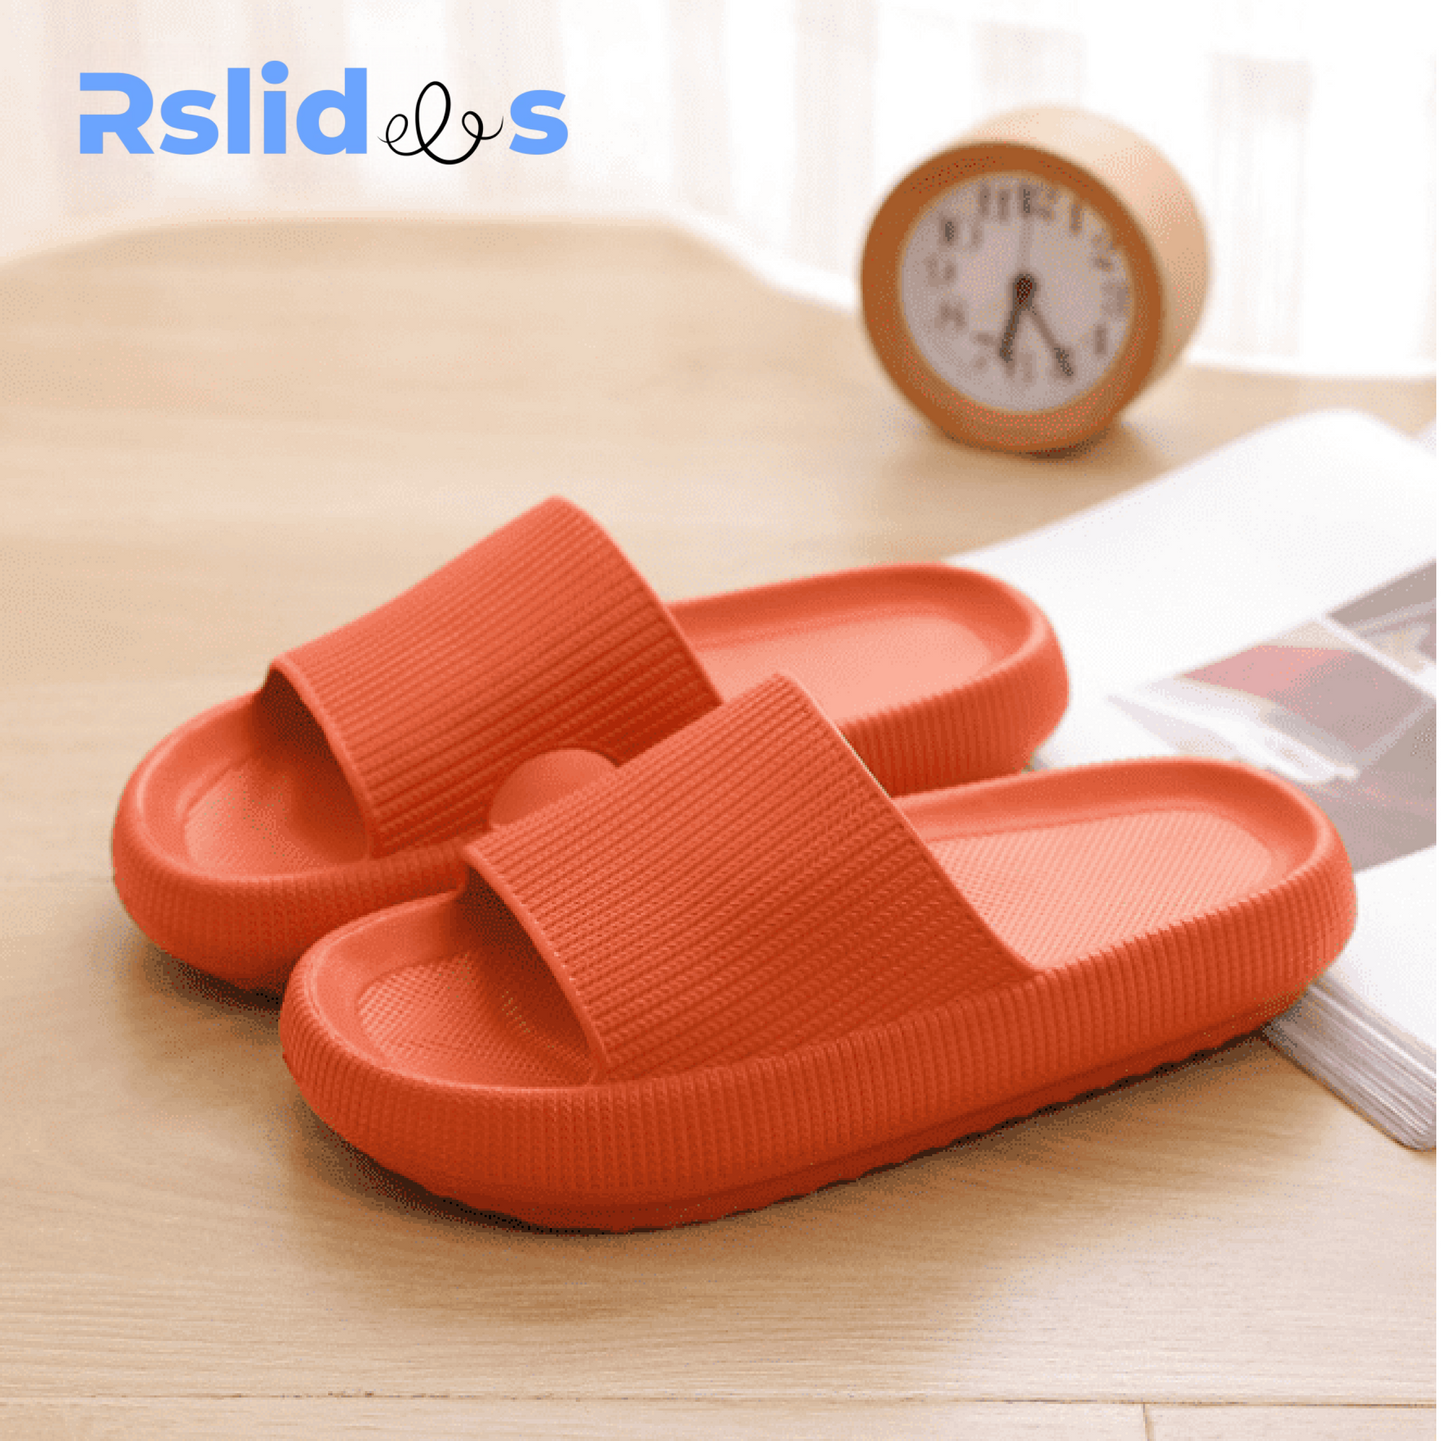 The RSLIDES™ - Cloud sandals